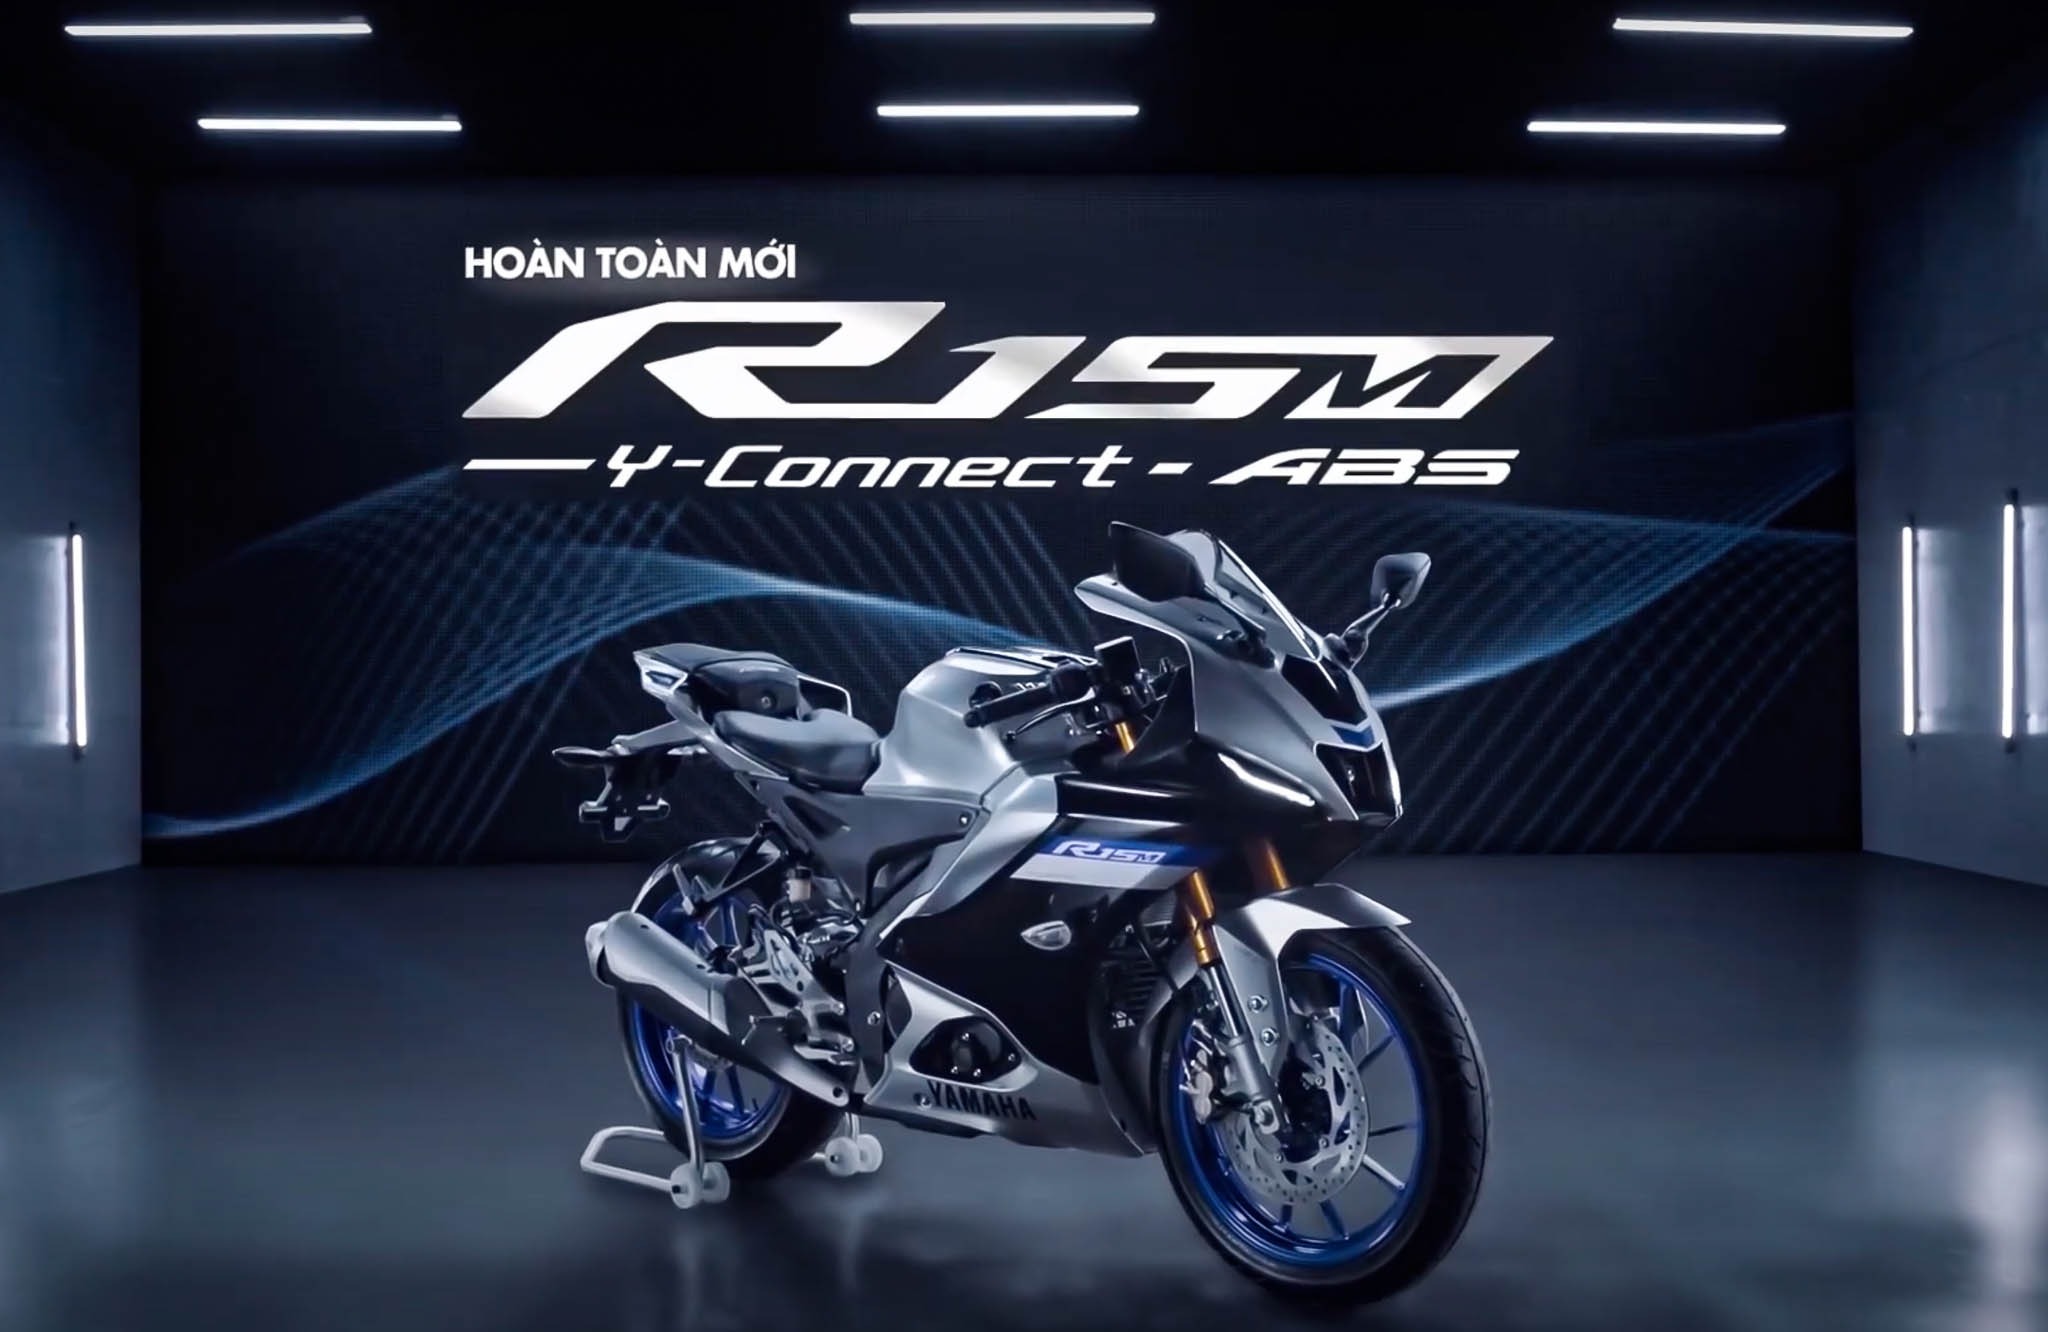 Yamaha R15v4 ra mắt Việt Nam với 2 phiên bản, giá từ 78 triệu VND